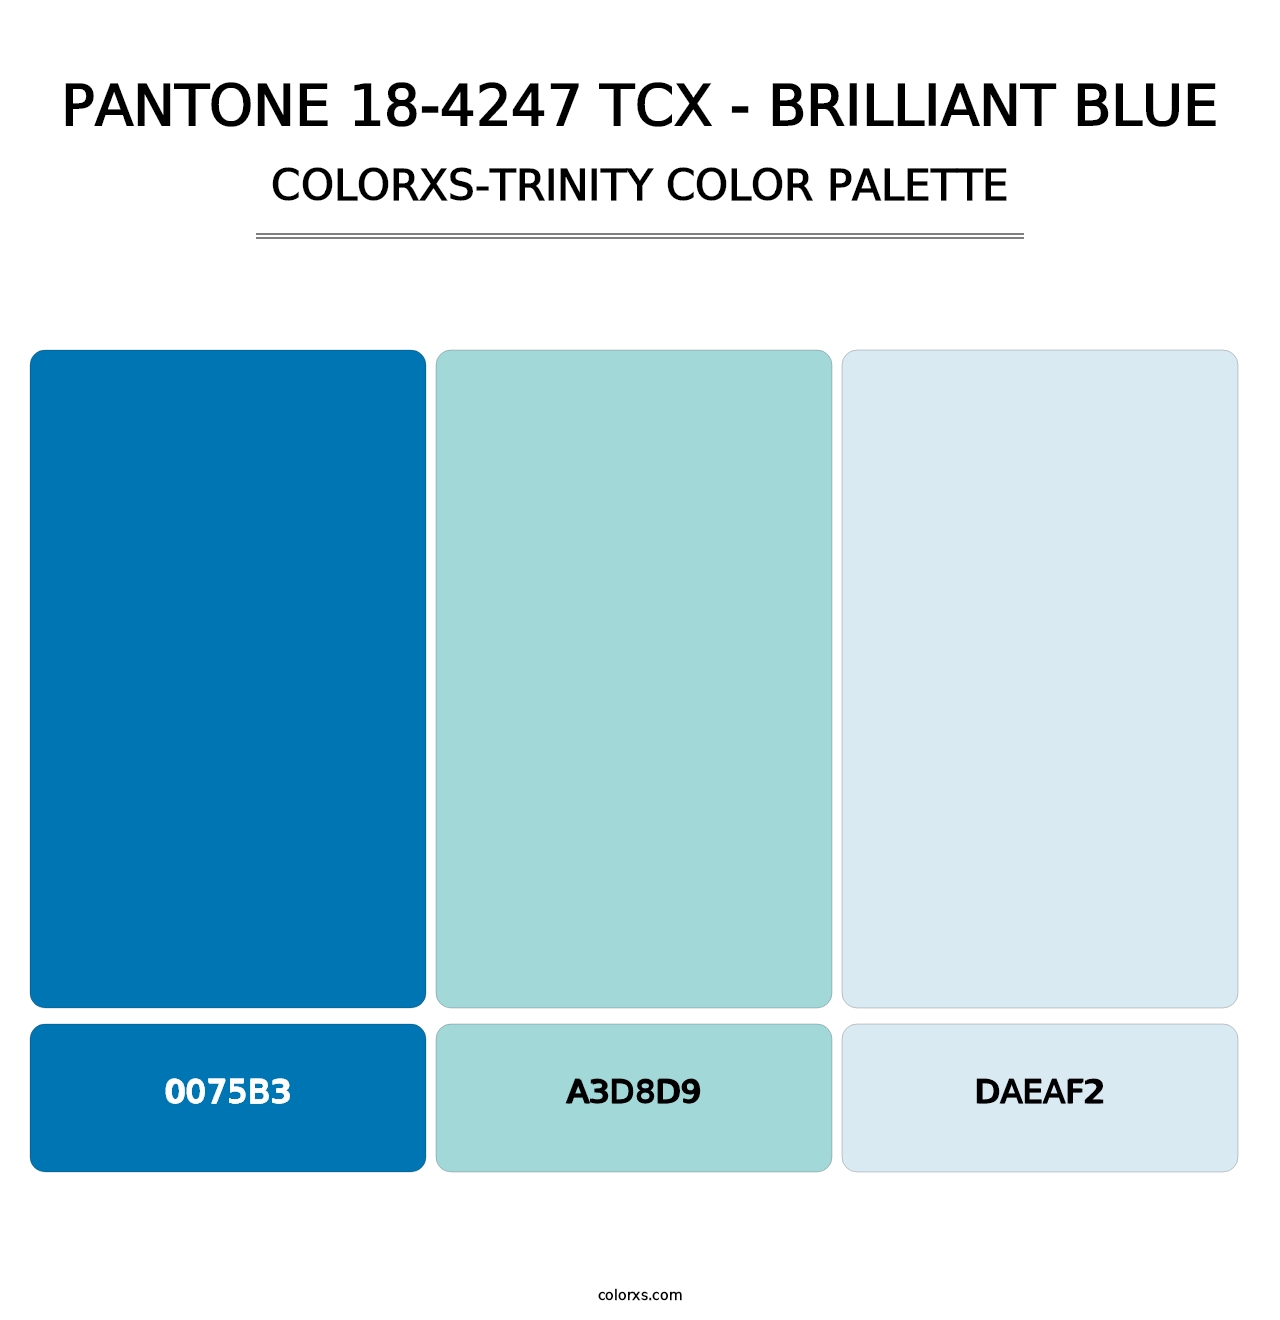 PANTONE 18-4247 TCX - Brilliant Blue - Colorxs Trinity Palette